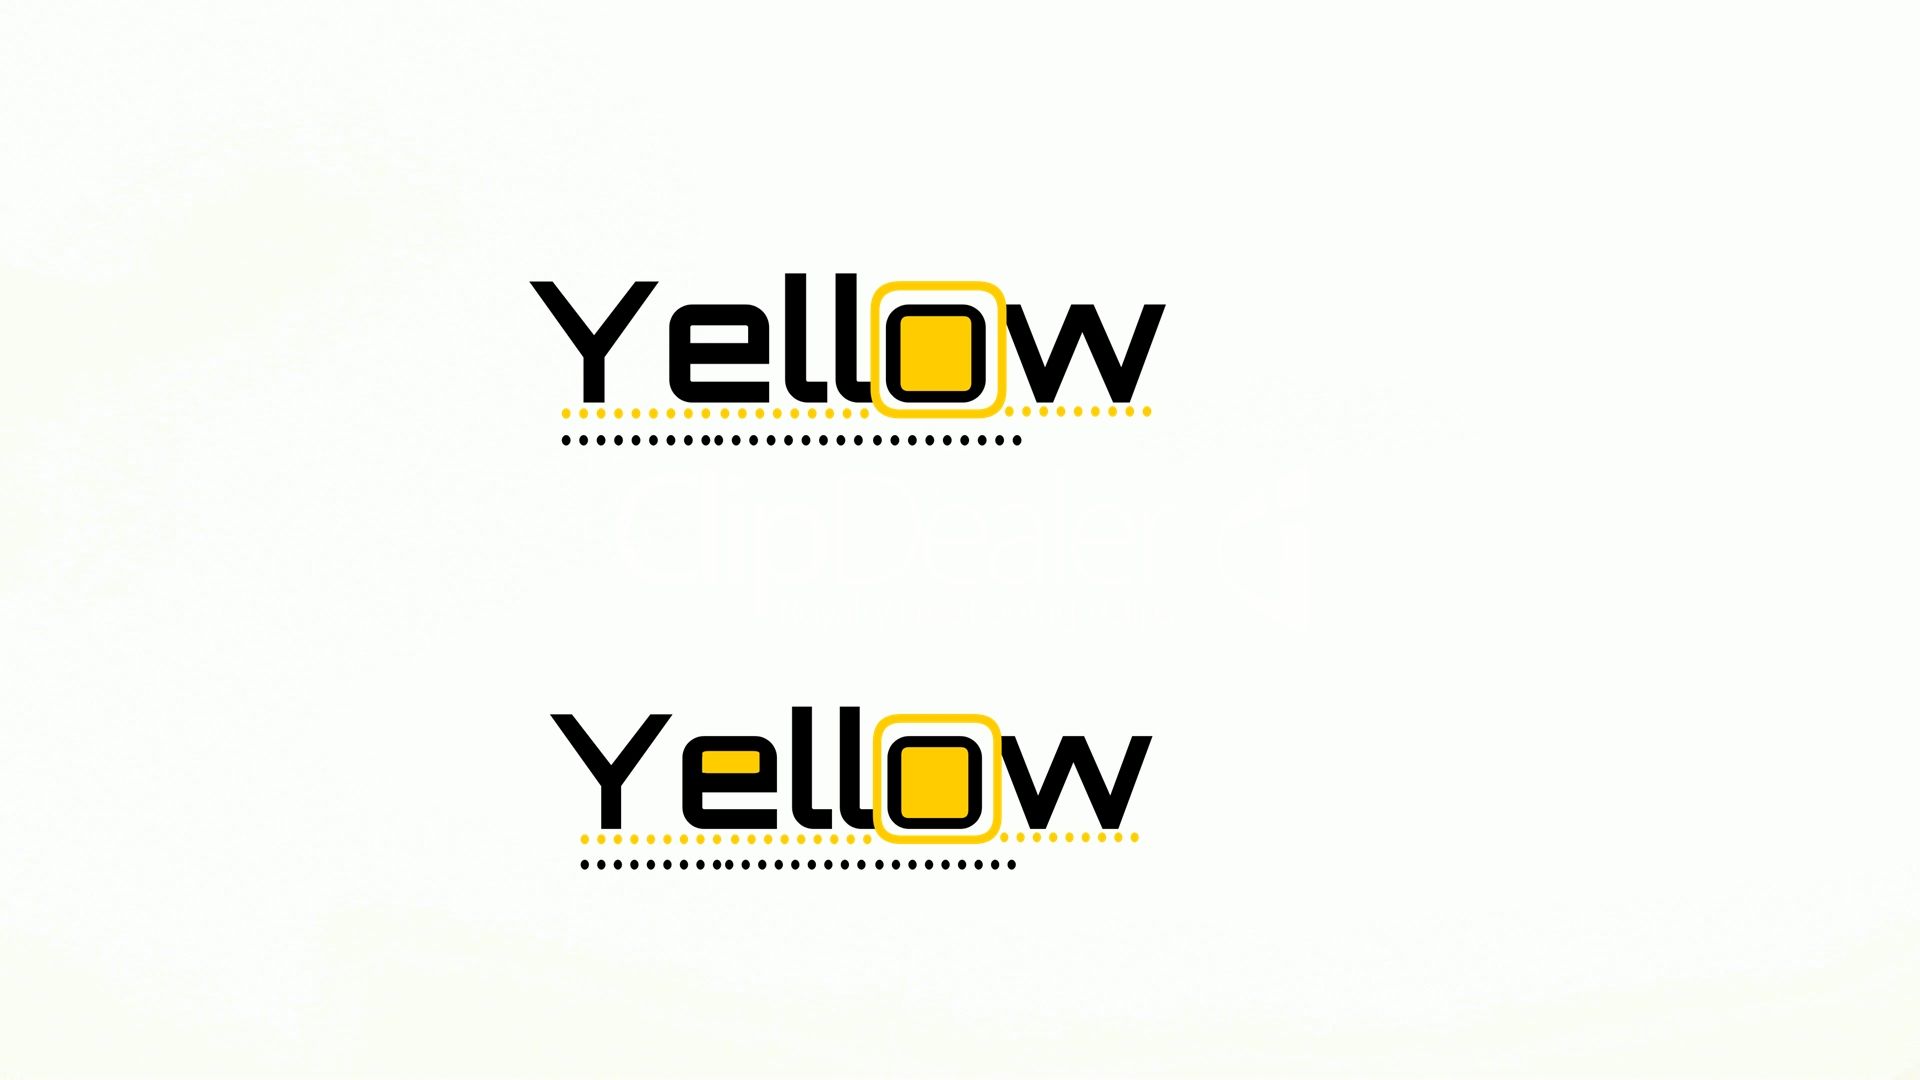 Лого и фирменный стиль для Yellow или Йеллоу - дизайнер LENUSIF